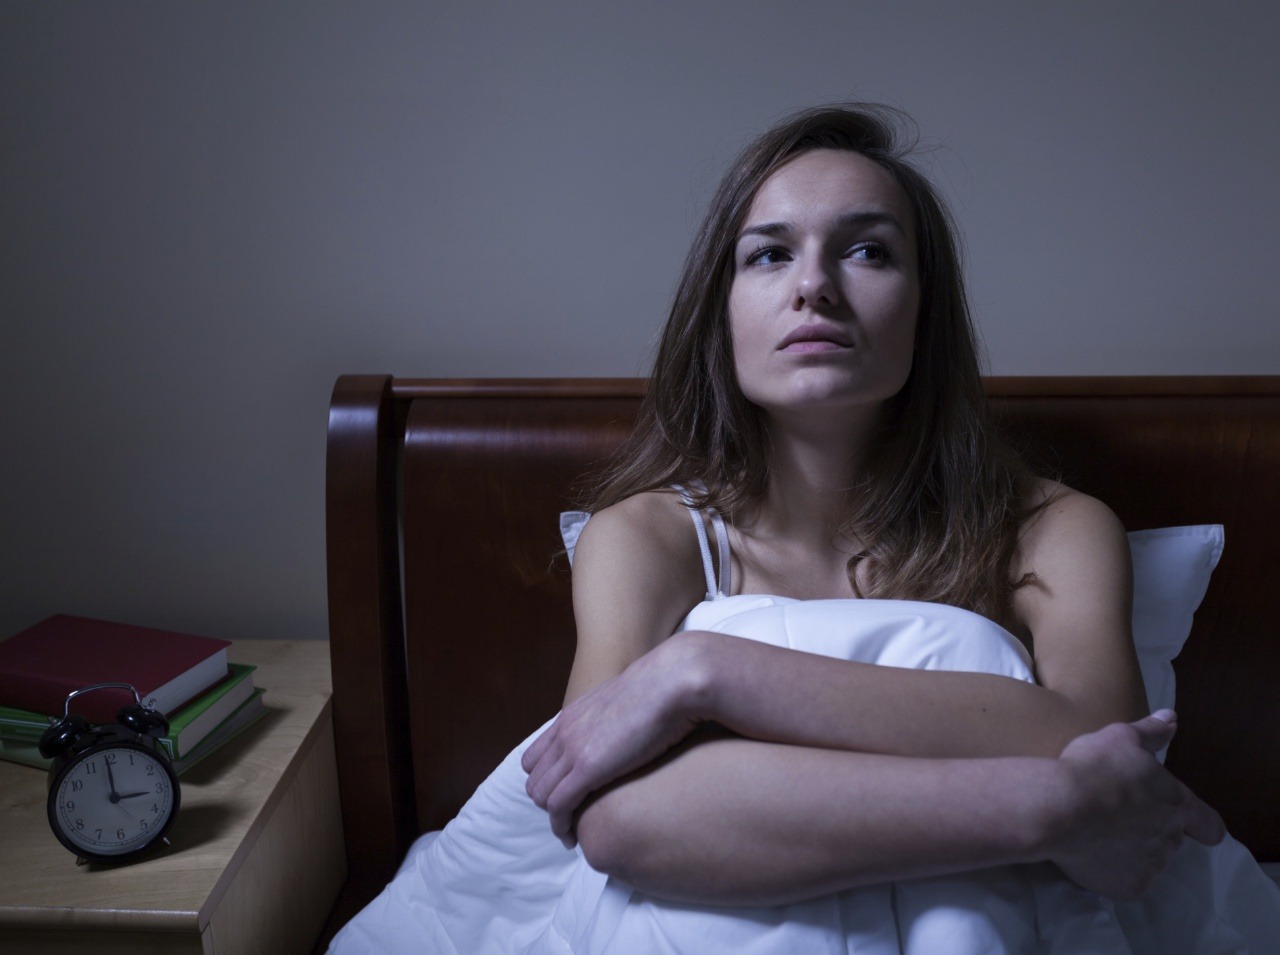 Nespavosť je okrem iného aj o našej psychike. Lieky na spanie ju nevyriešia, niektoré večerné rituály jej tiež neprospievajú. 